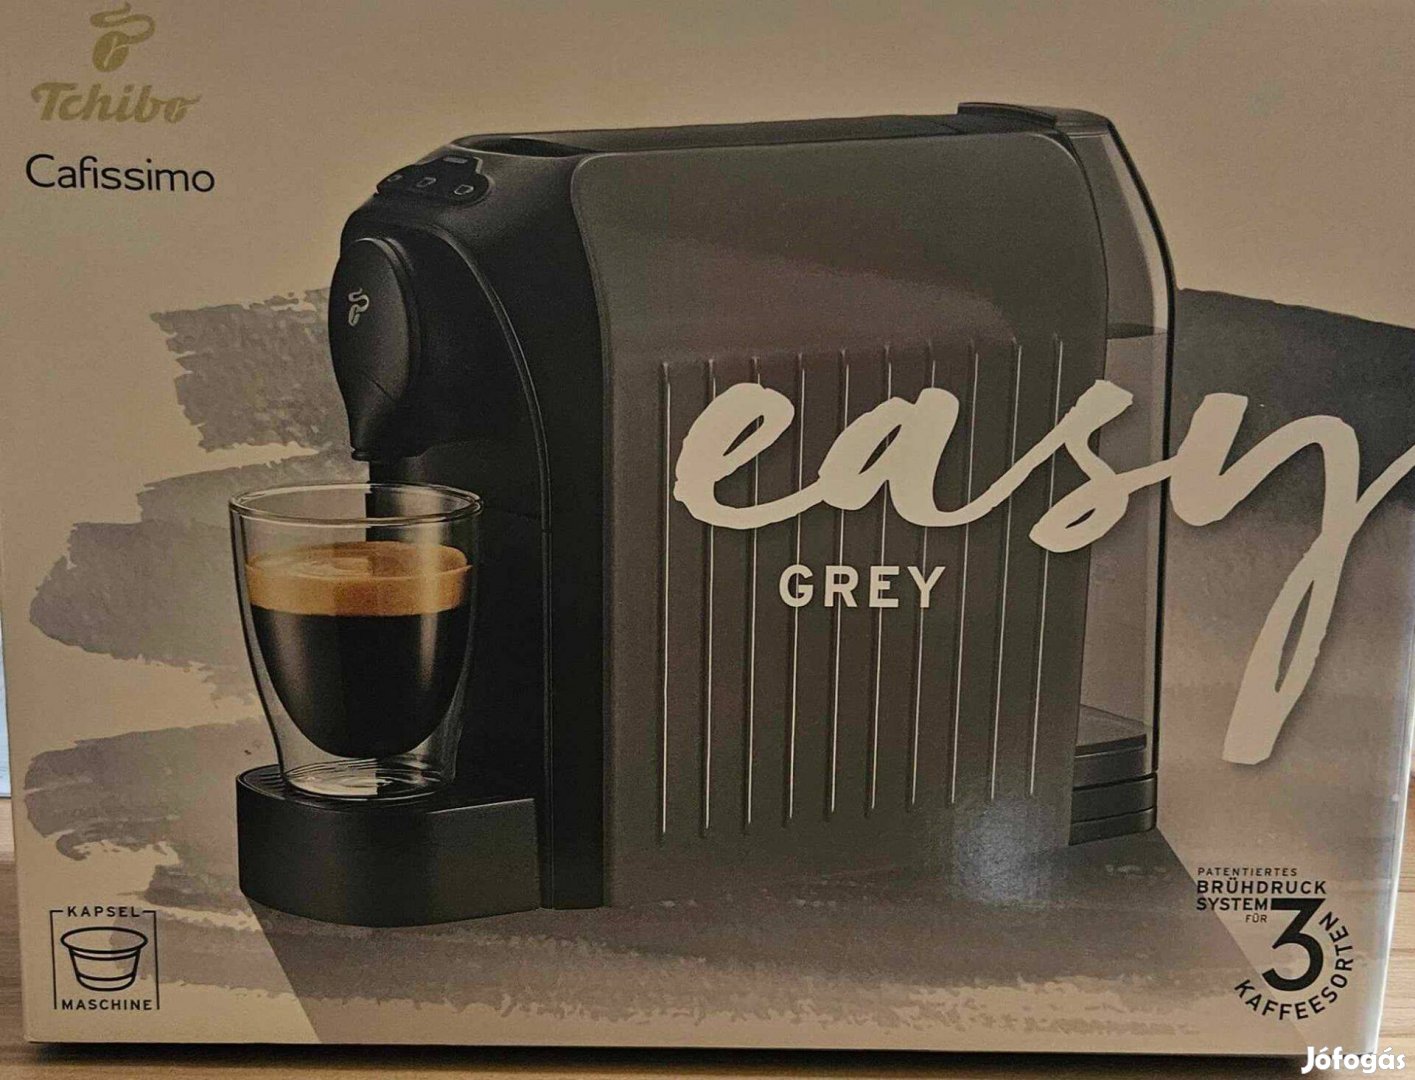 Új Tchibo Cafissimo easy grey kapszulás kávéfőző